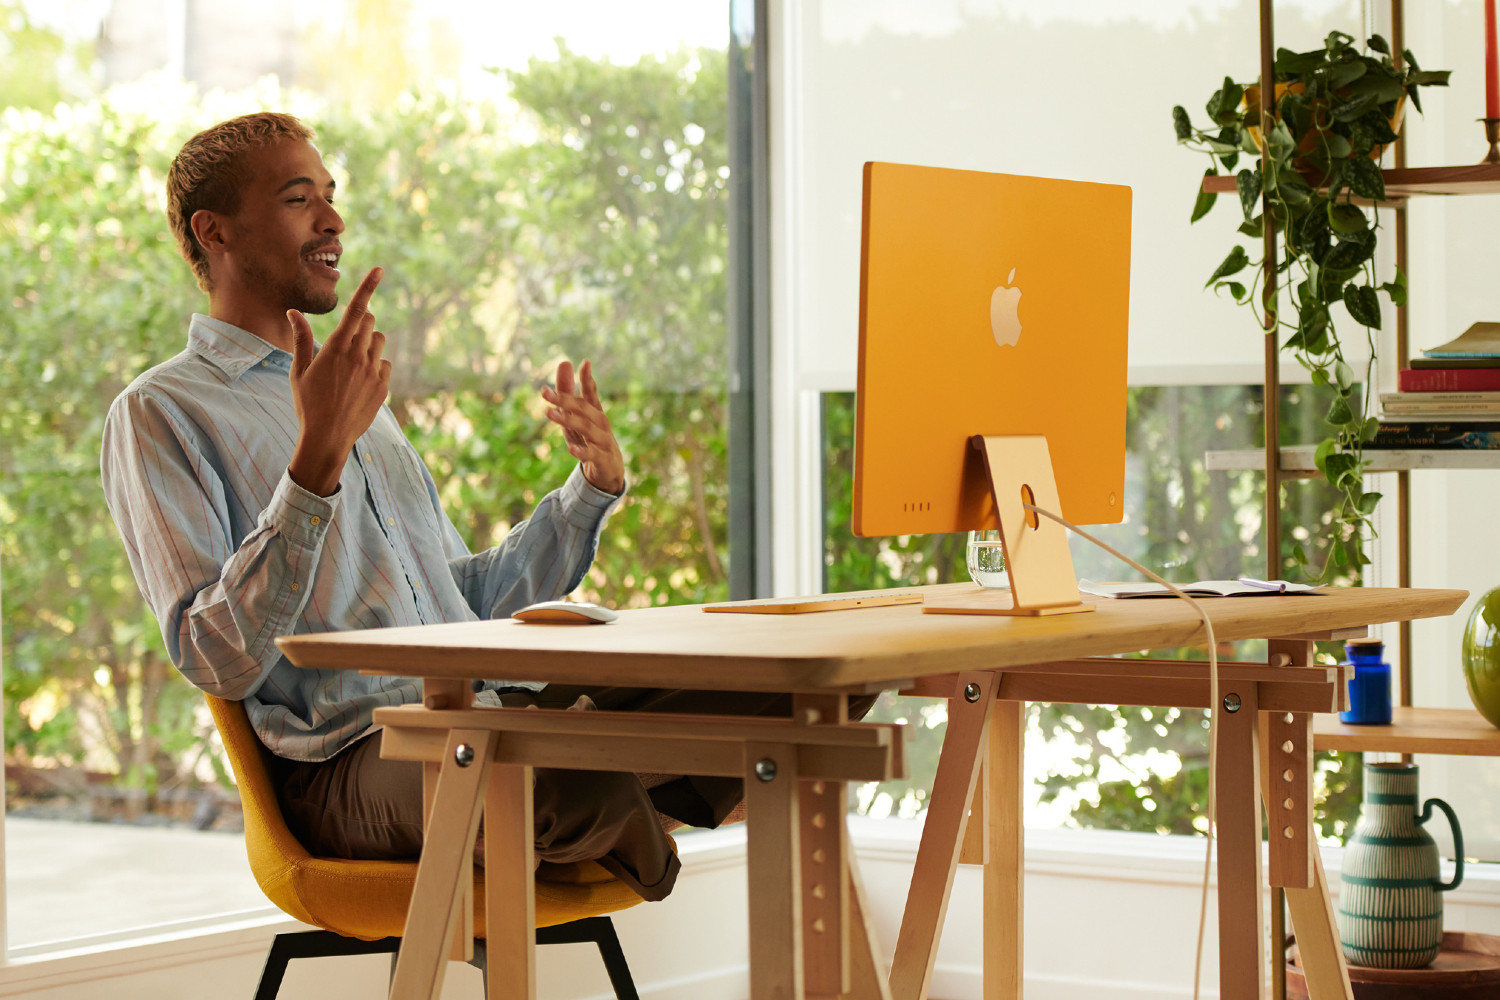 一名男子坐在 M1 iMac 前的办公桌前。他身后是一扇大玻璃窗和一组架子，架子上放着书籍、植物和装饰品。